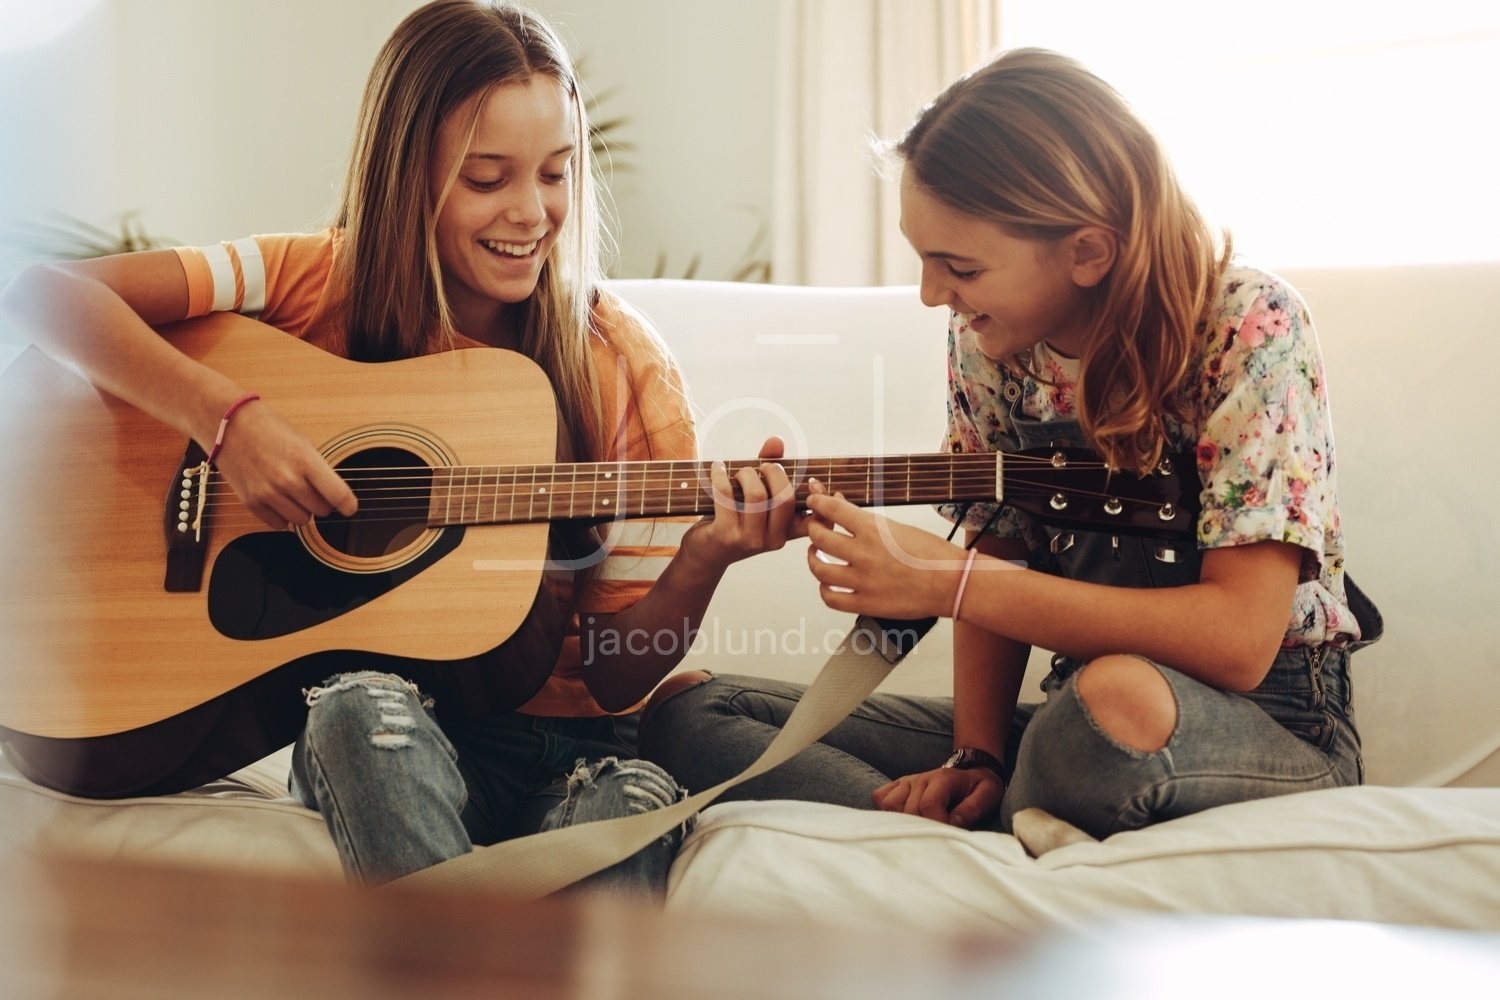 He can the guitar. Подросток с гитарой. Подруги с гитарами. Люди играющие на гитаре. Гитара для детей.